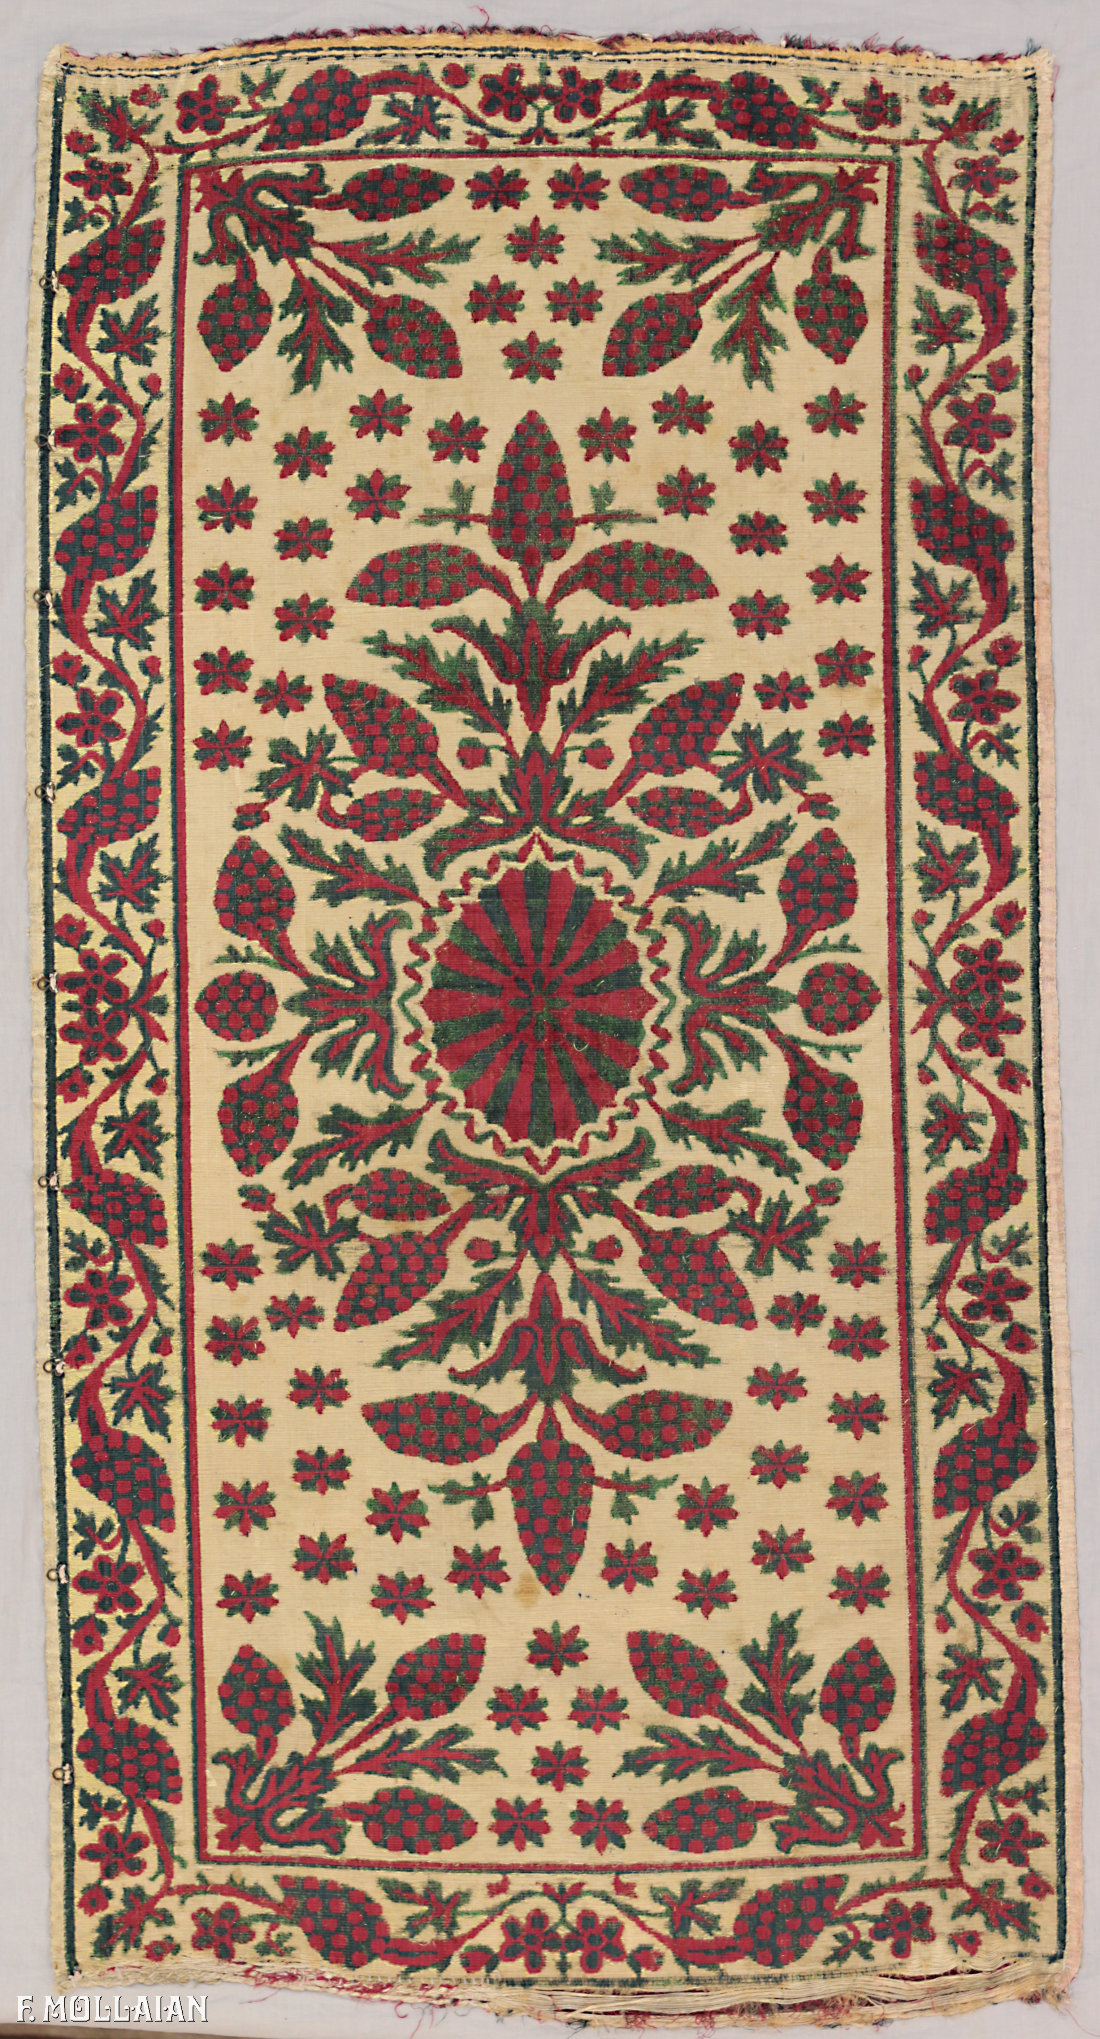 Textil Turco Antiguo Ottoman (Velvet) n°:68495009